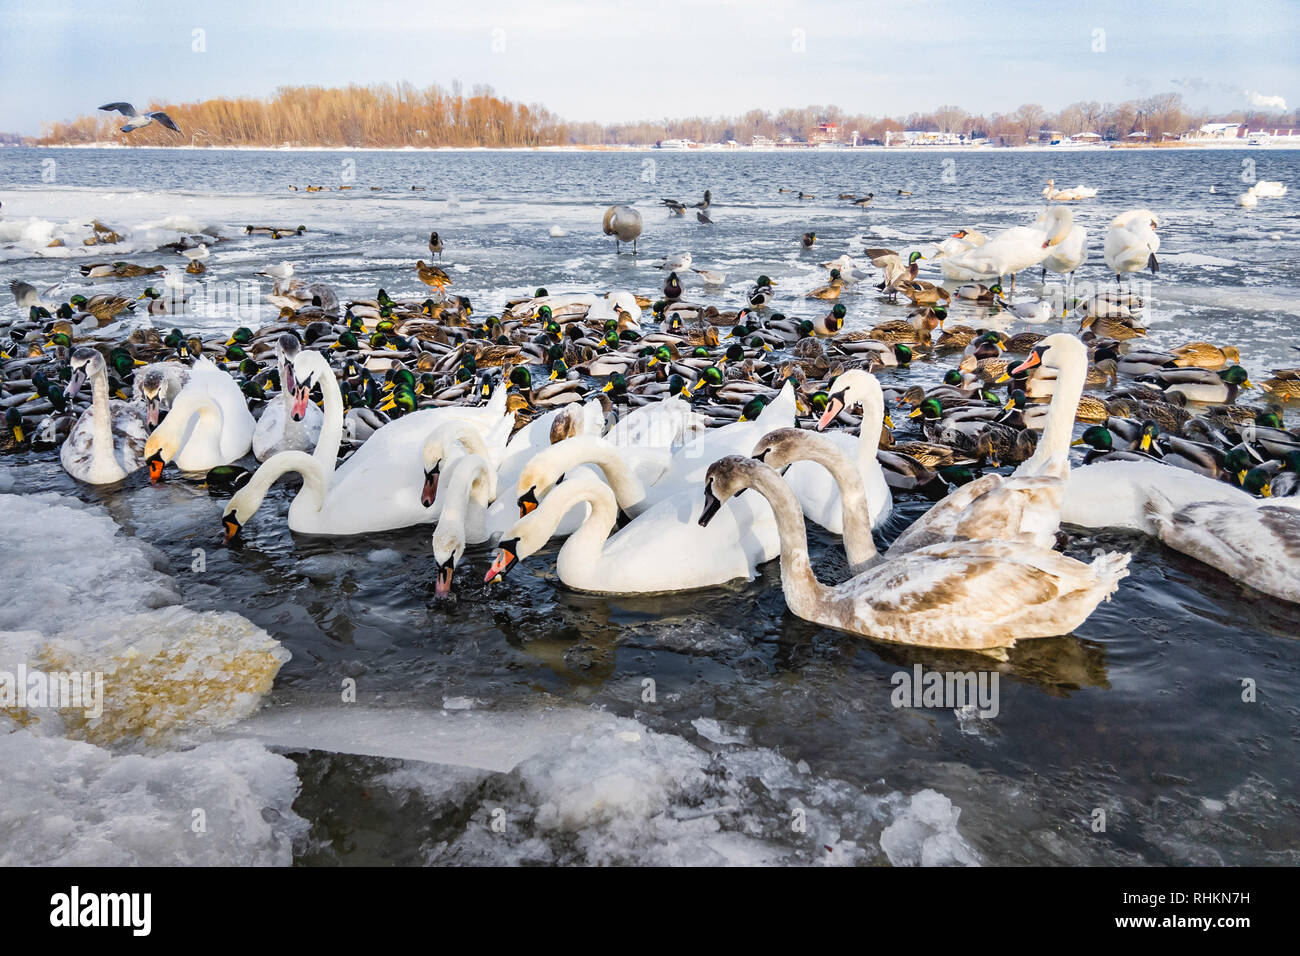 Une multitude de canards et cygnes sauvages sur la rivière Dniepr à Kiev, Ukraine, au cours de l'hiver froid et enneigé Banque D'Images